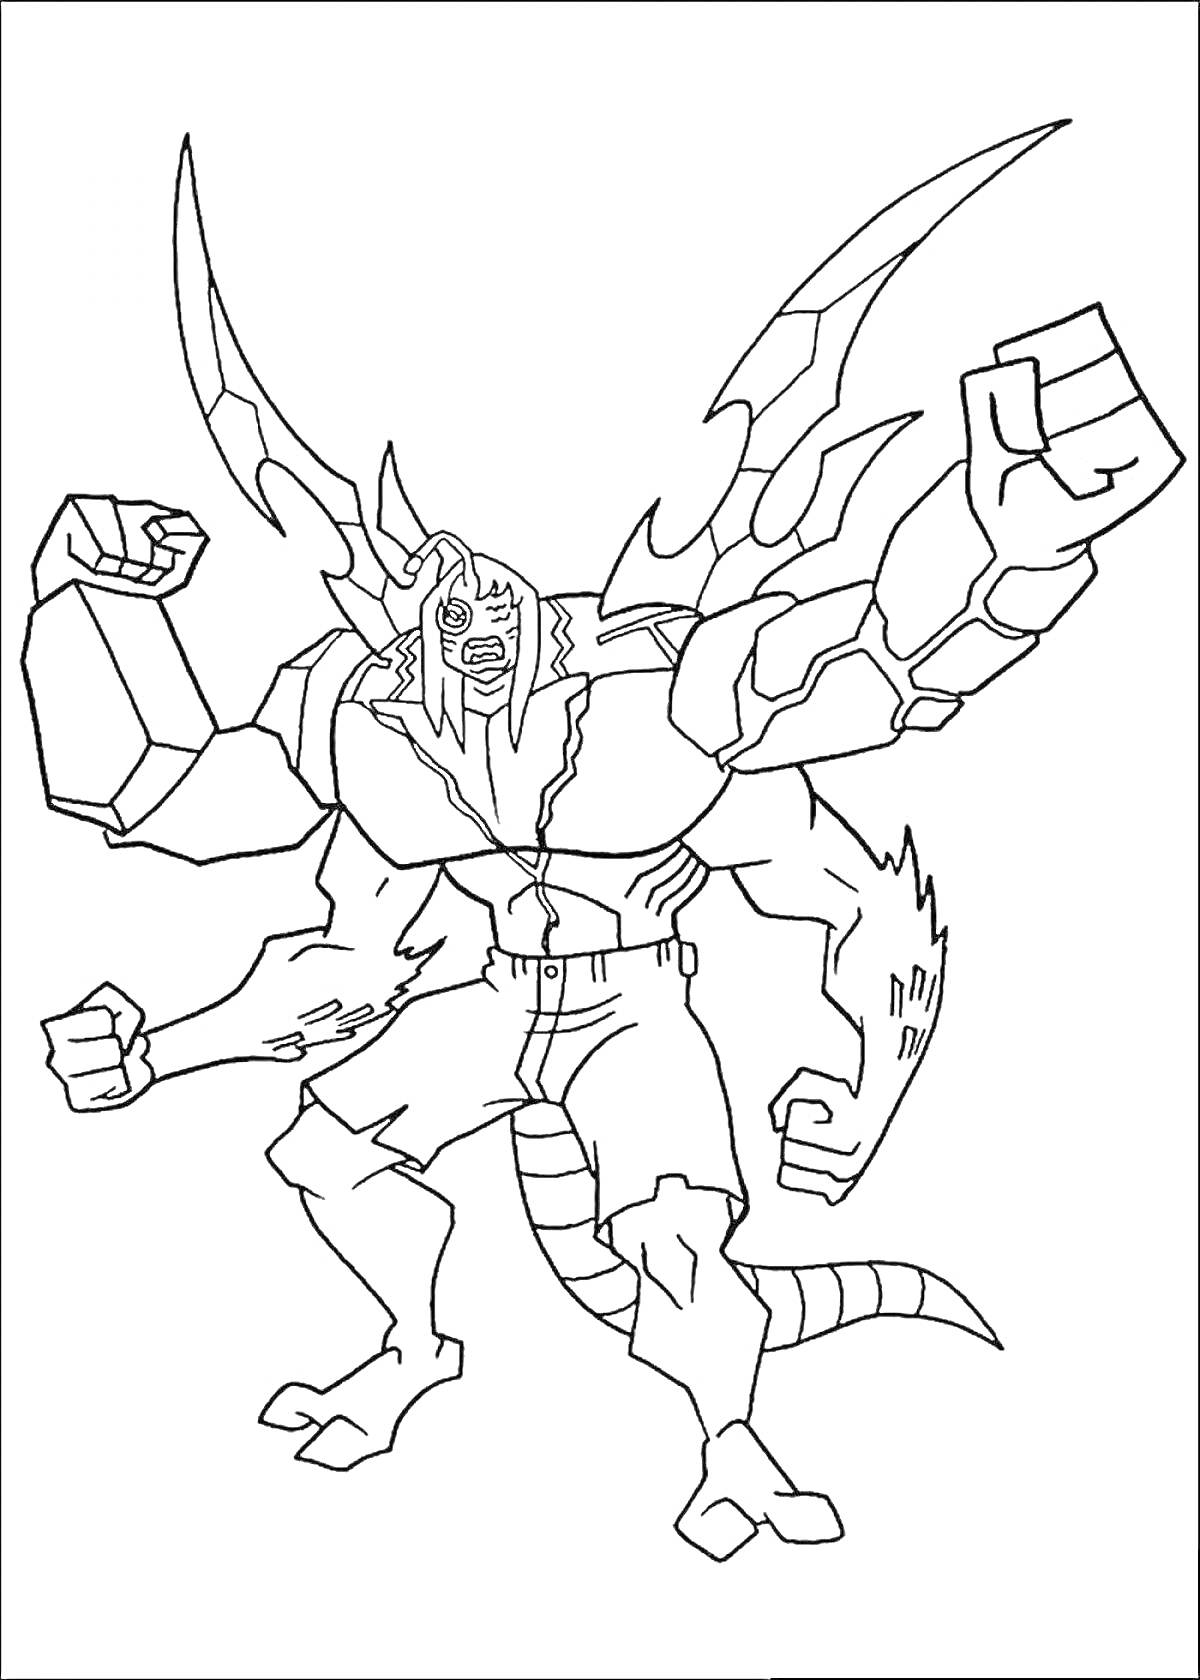 Раскраска Бен 10 - Человек-ящерица с крыльями, в шортах, с поднятыми кулаками